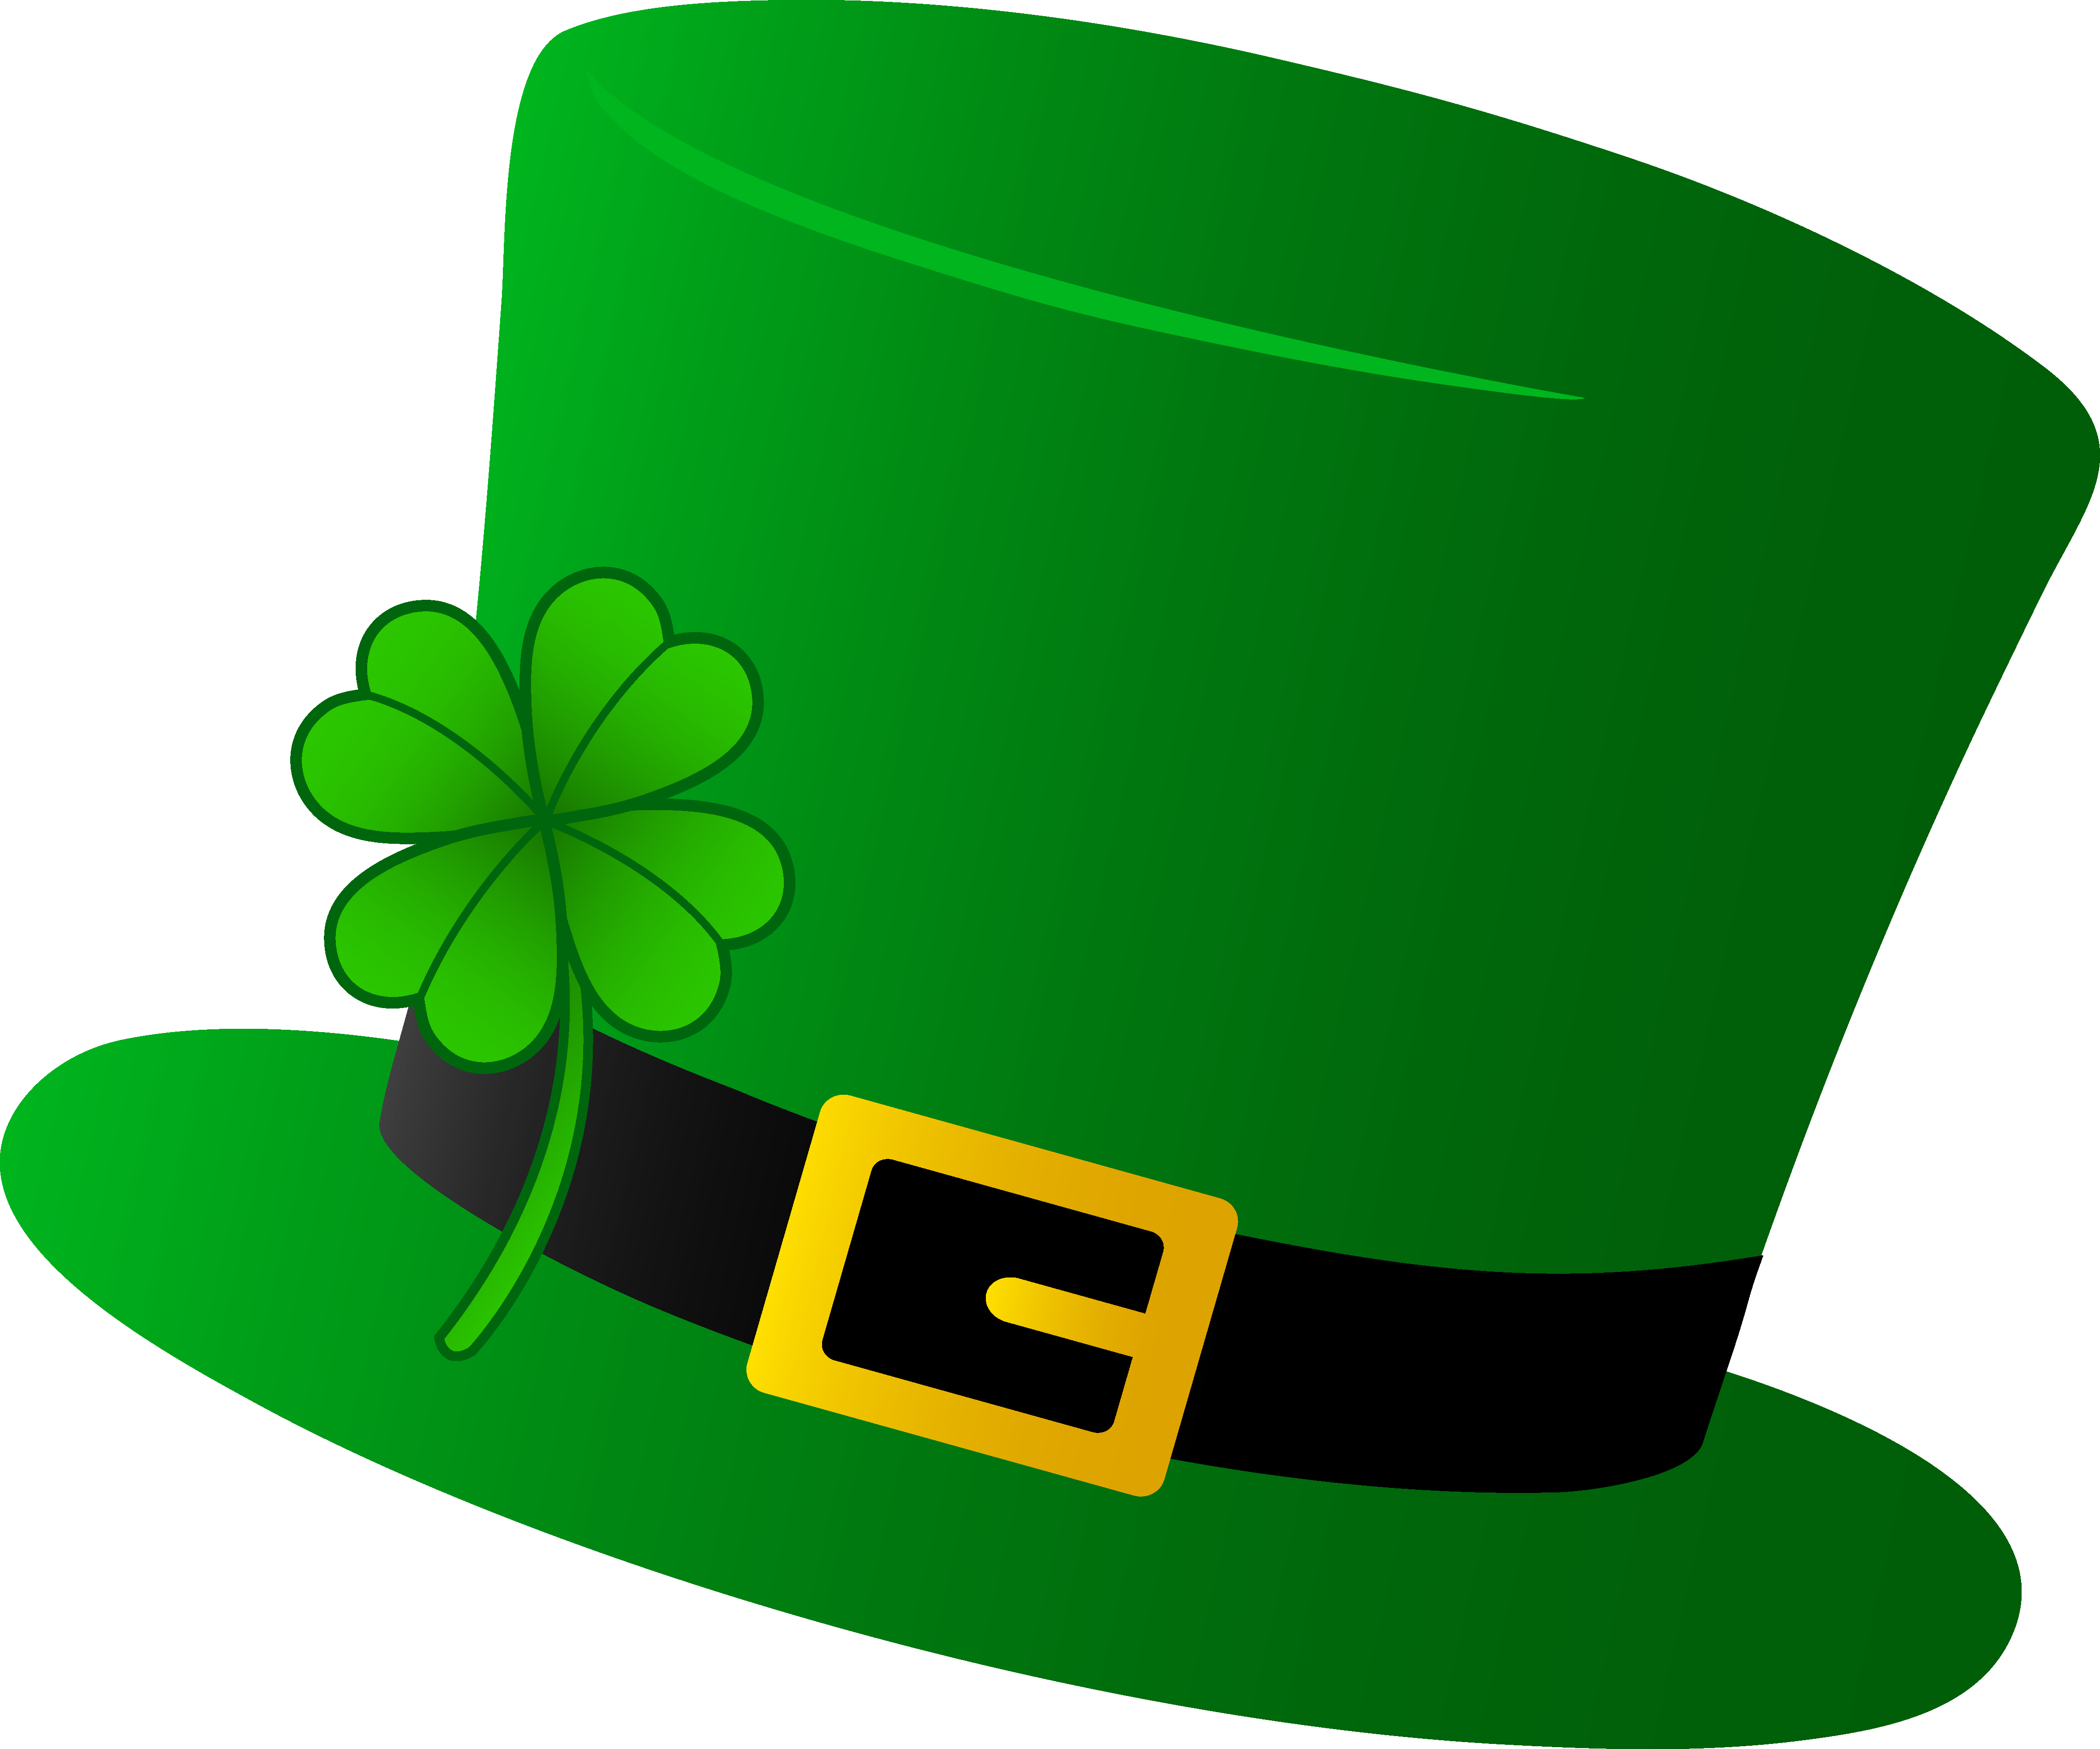 celebrate-st-patrick-s-day-at-delmarva-irish-american-club-s-st